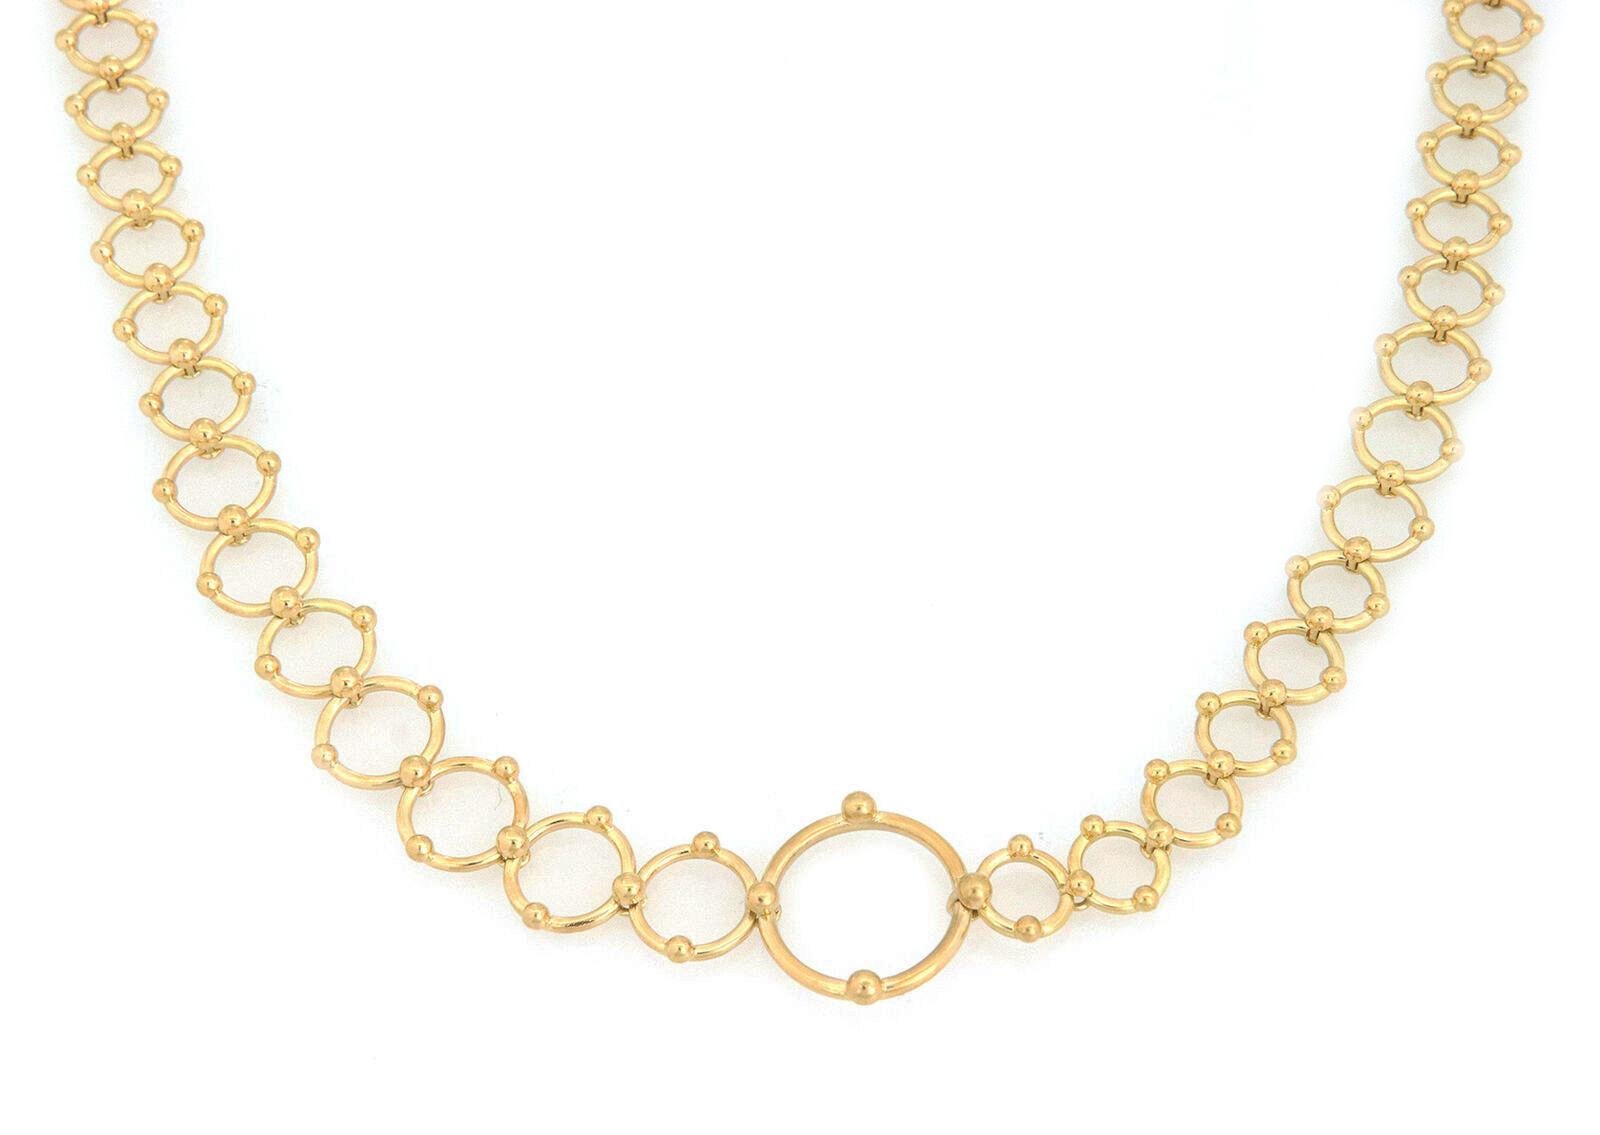 Dies ist eine wunderschöne authentische Halskette von Tiffany & Co. Gefertigt aus 18 Karat Gelbgold mit einer fein polierten Oberfläche mit verschiedenen offenen Ringgliedern, die jeweils durch eine doppelseitige feine Perlenklammer verbunden sind.